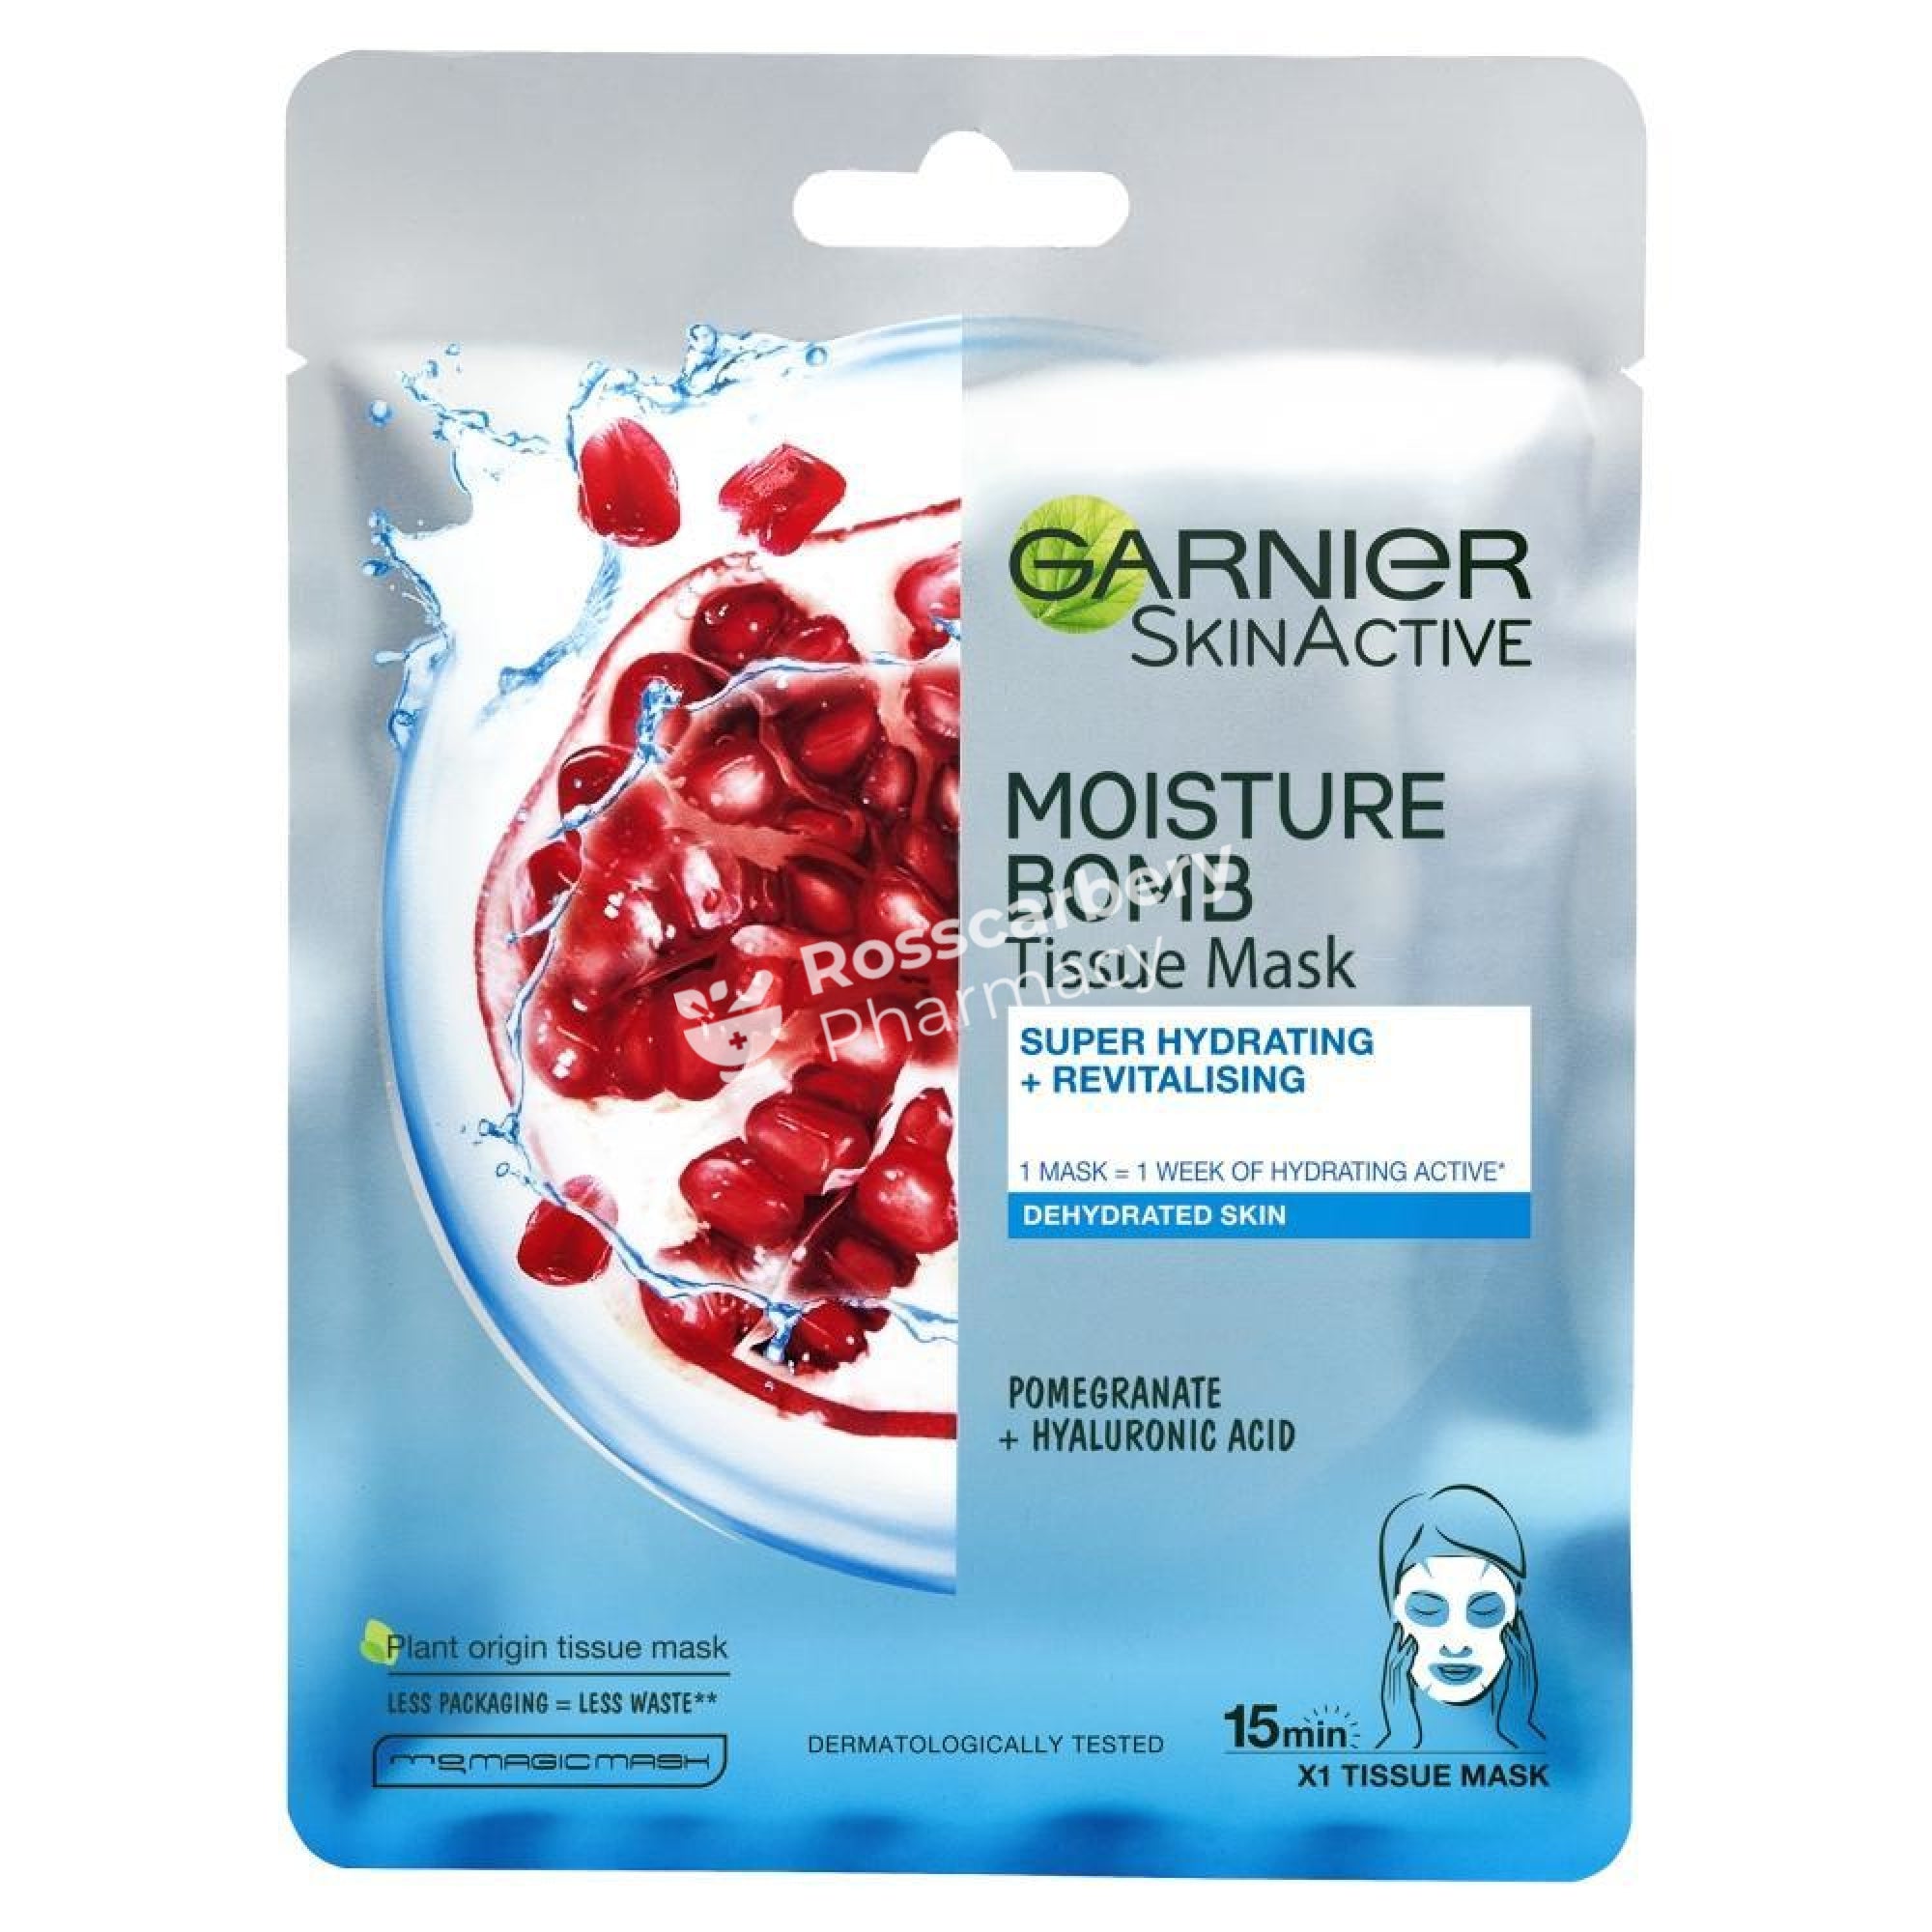 Garnier Skinactive Moisture Bomb Tissue Mask - Pomegranate + Hyaluronic Acid Face Masks/treatment